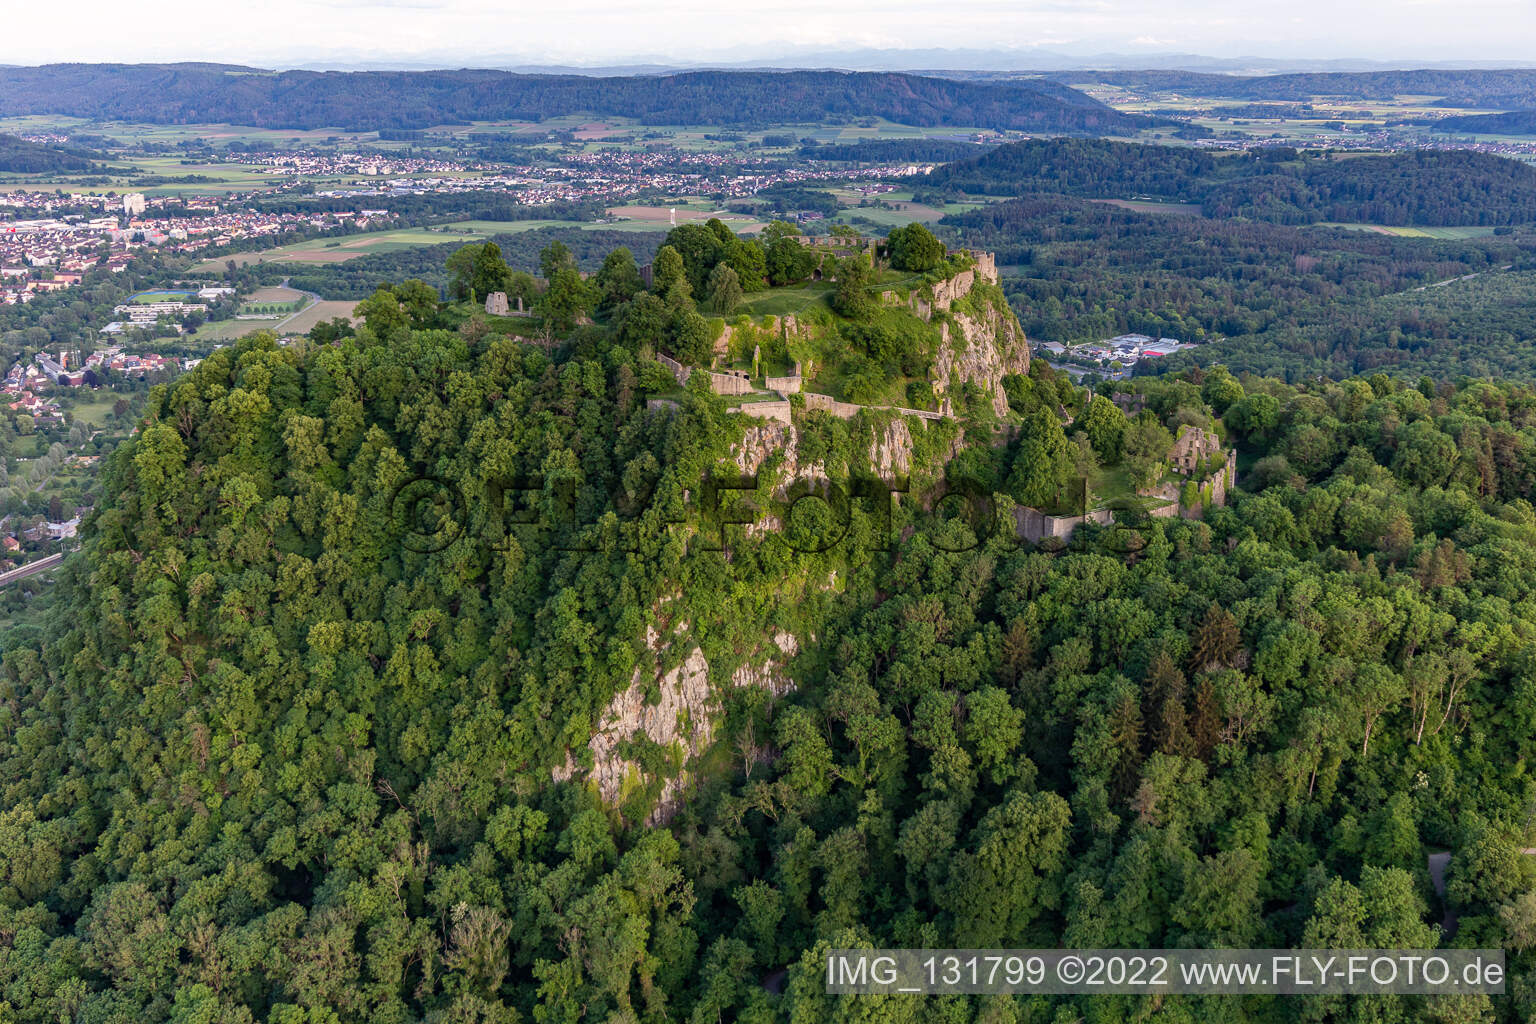 Hohentwiel, avec ses ruines de forteresse datant de 914 et ses vues panoramiques, est un volcan éteint à Singen dans le département Bade-Wurtemberg, Allemagne hors des airs